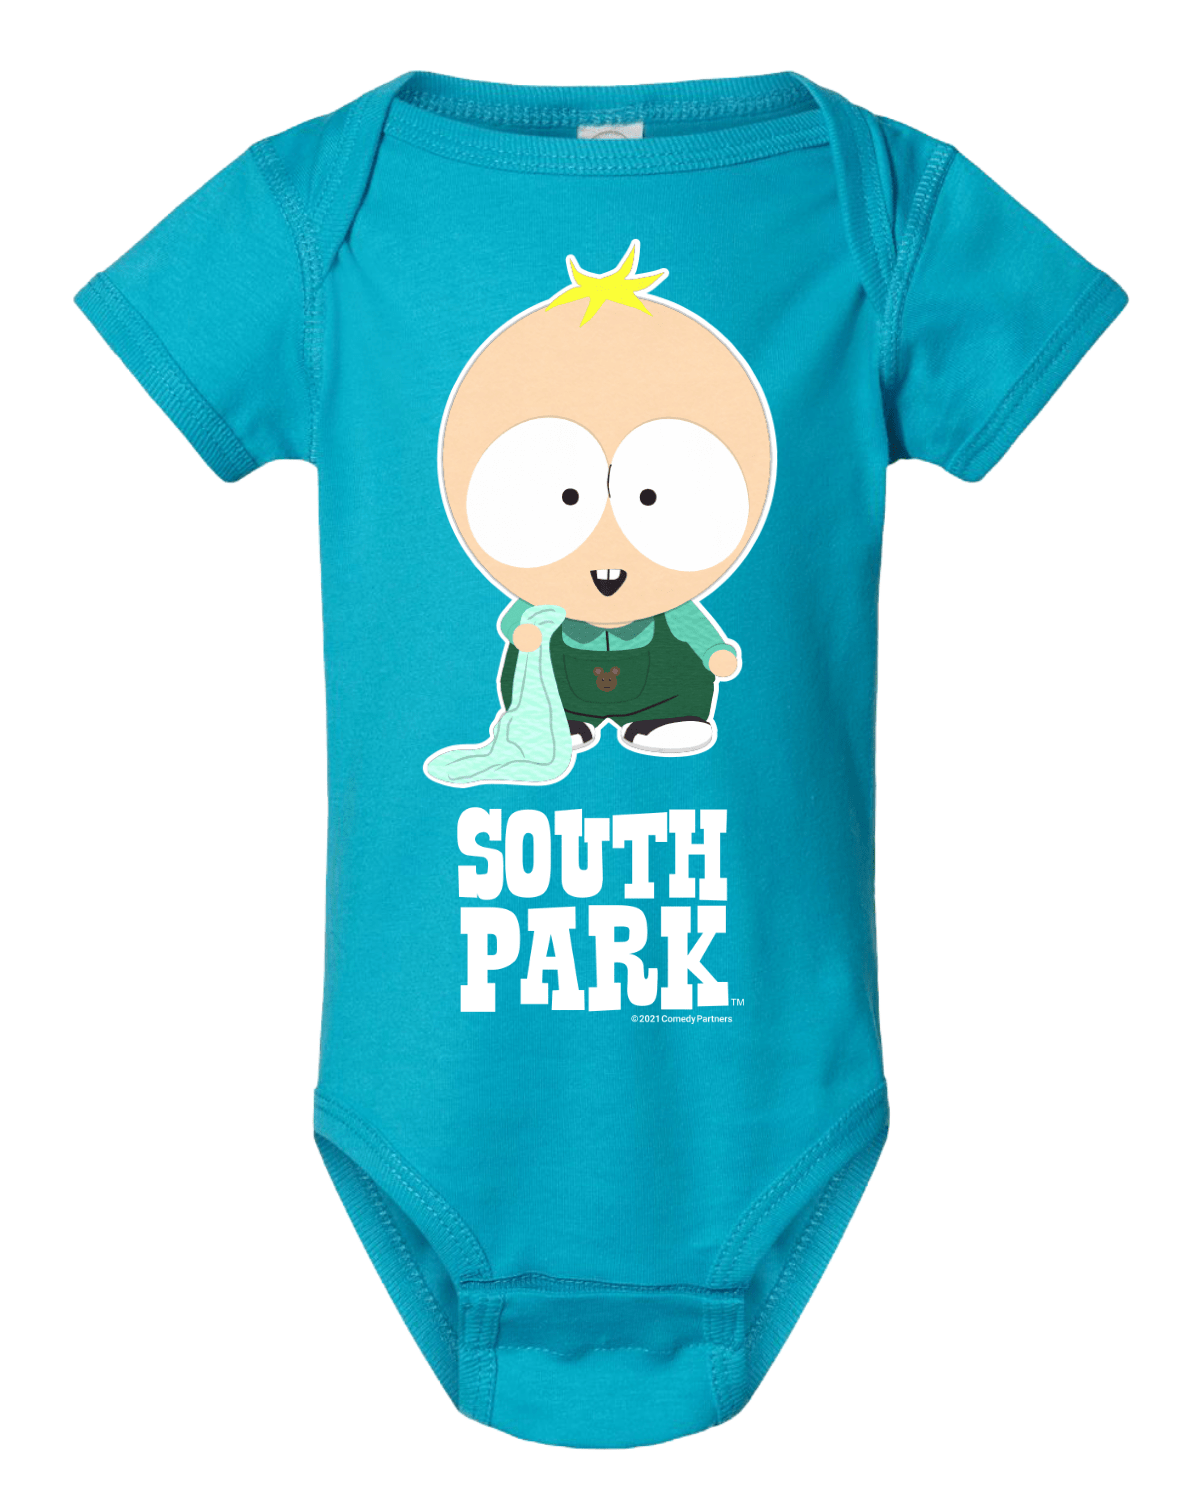 South Park Butters Baby Bodysuit - Paramount Shop